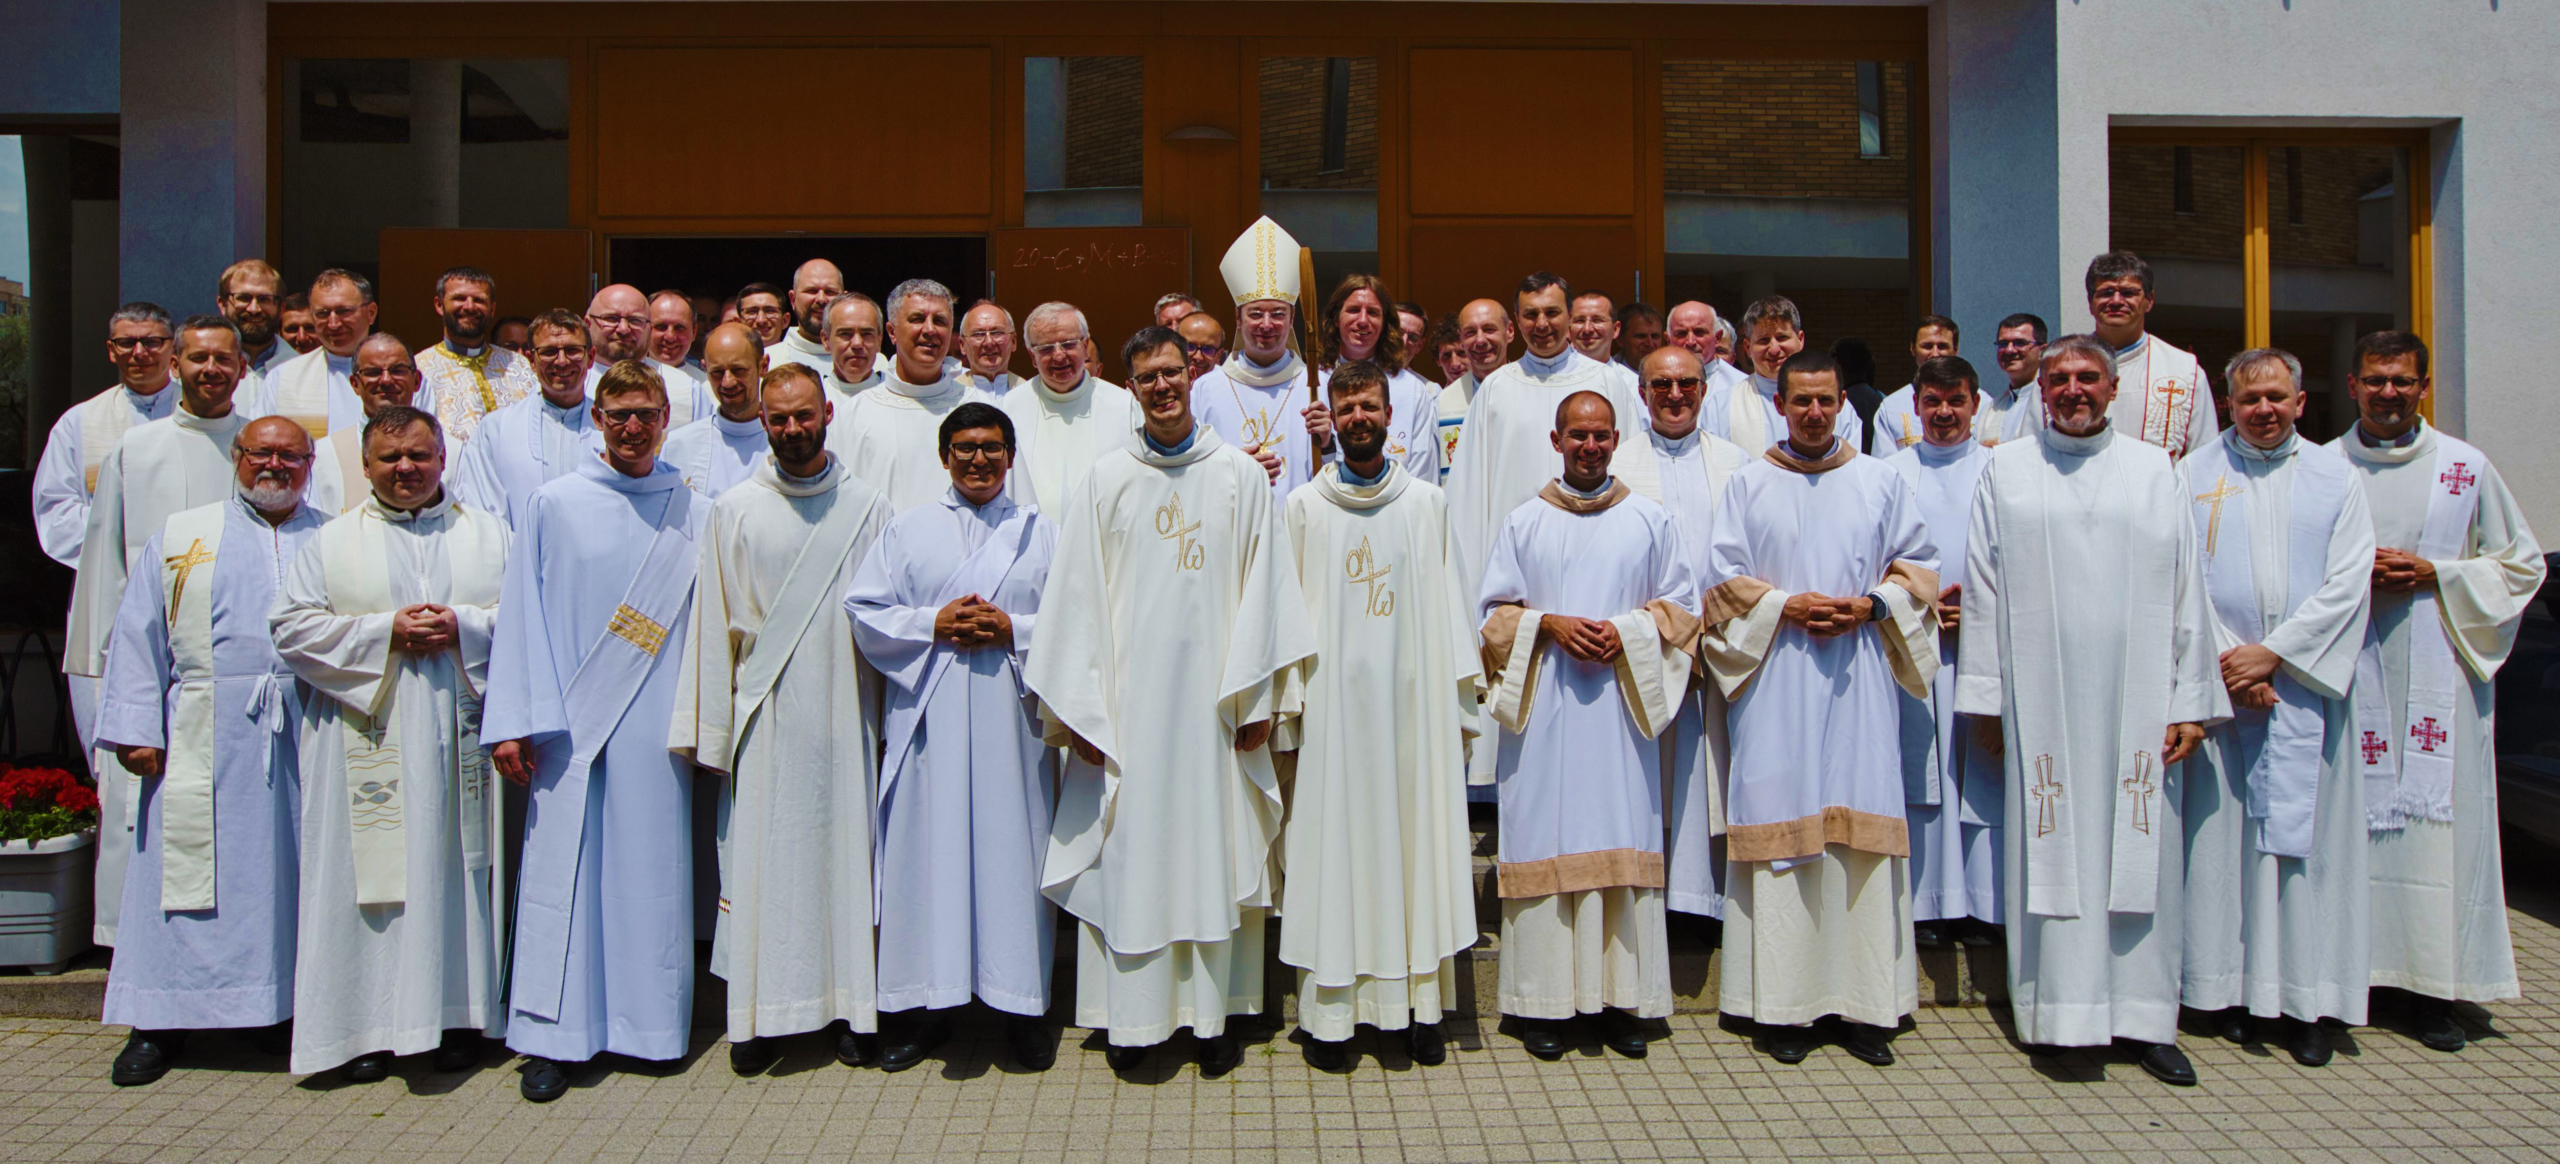 Biskup Forgáč vysvätil dvoch saleziánov za kňazov: Najviac pozornosti si zaslúži jeden Pastier